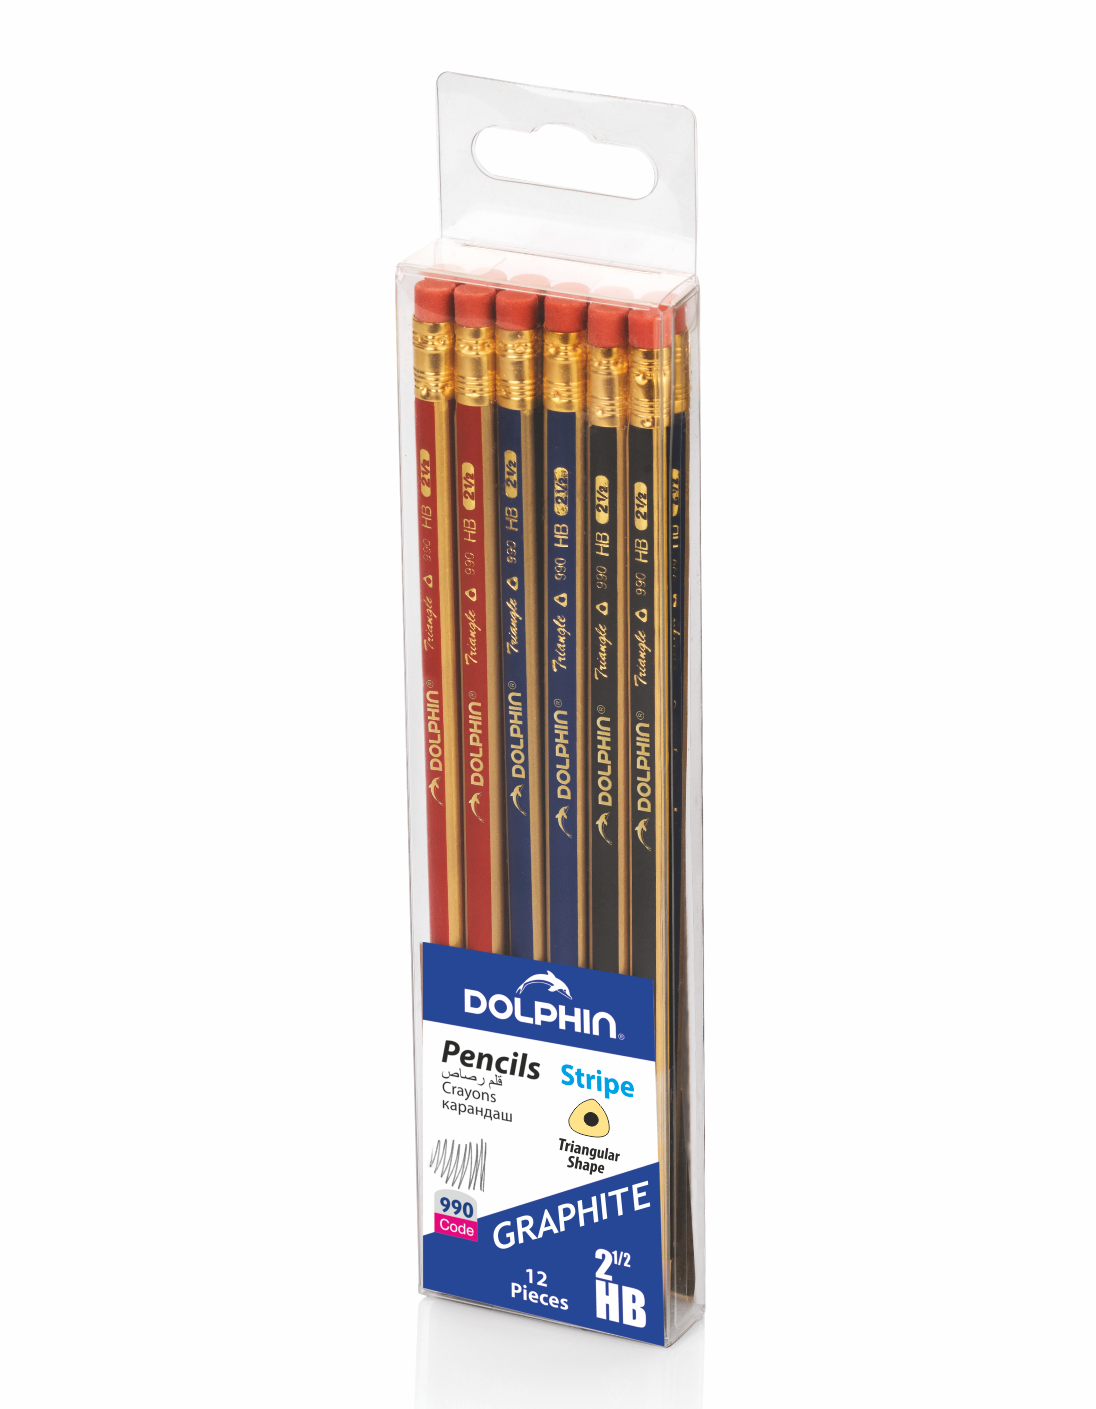 Crayon graphite Conté évolution HB N°2 - par 10 - RETIF